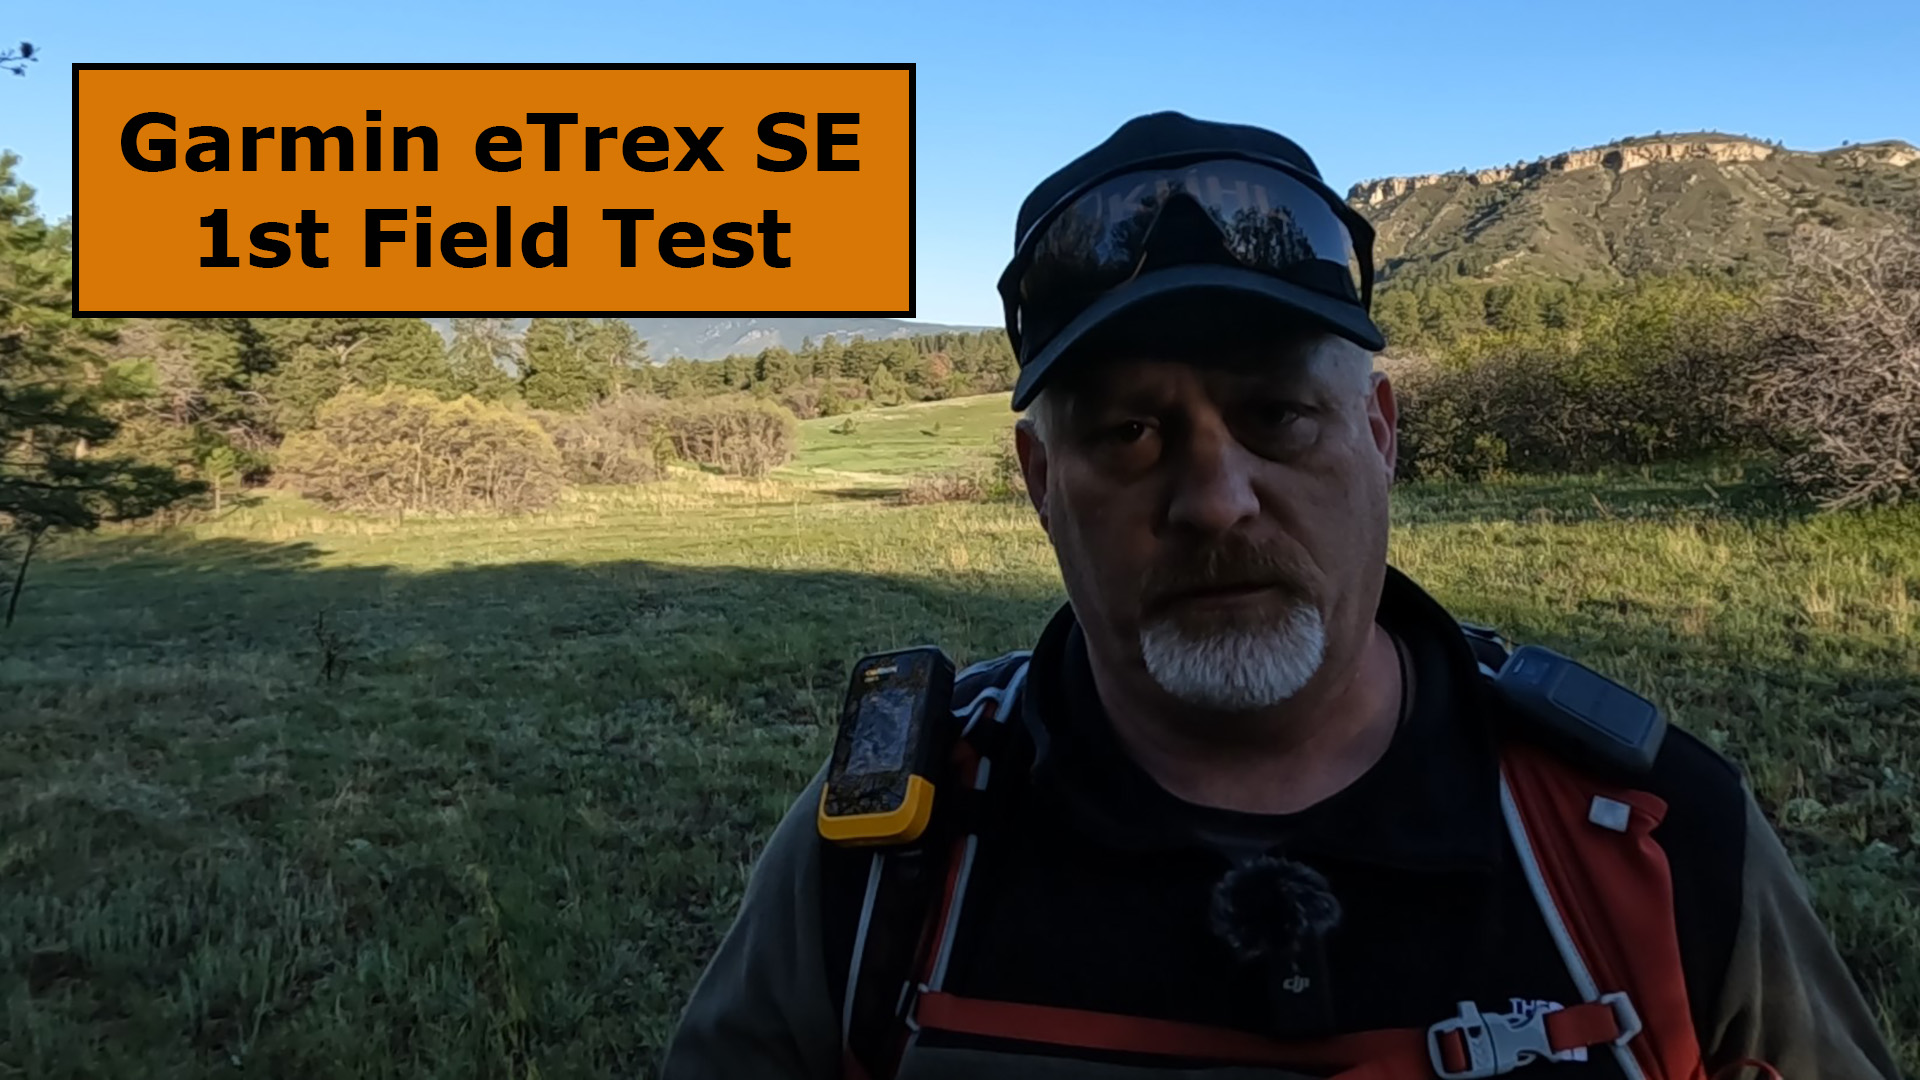 Garmin eTrex SE Field Test